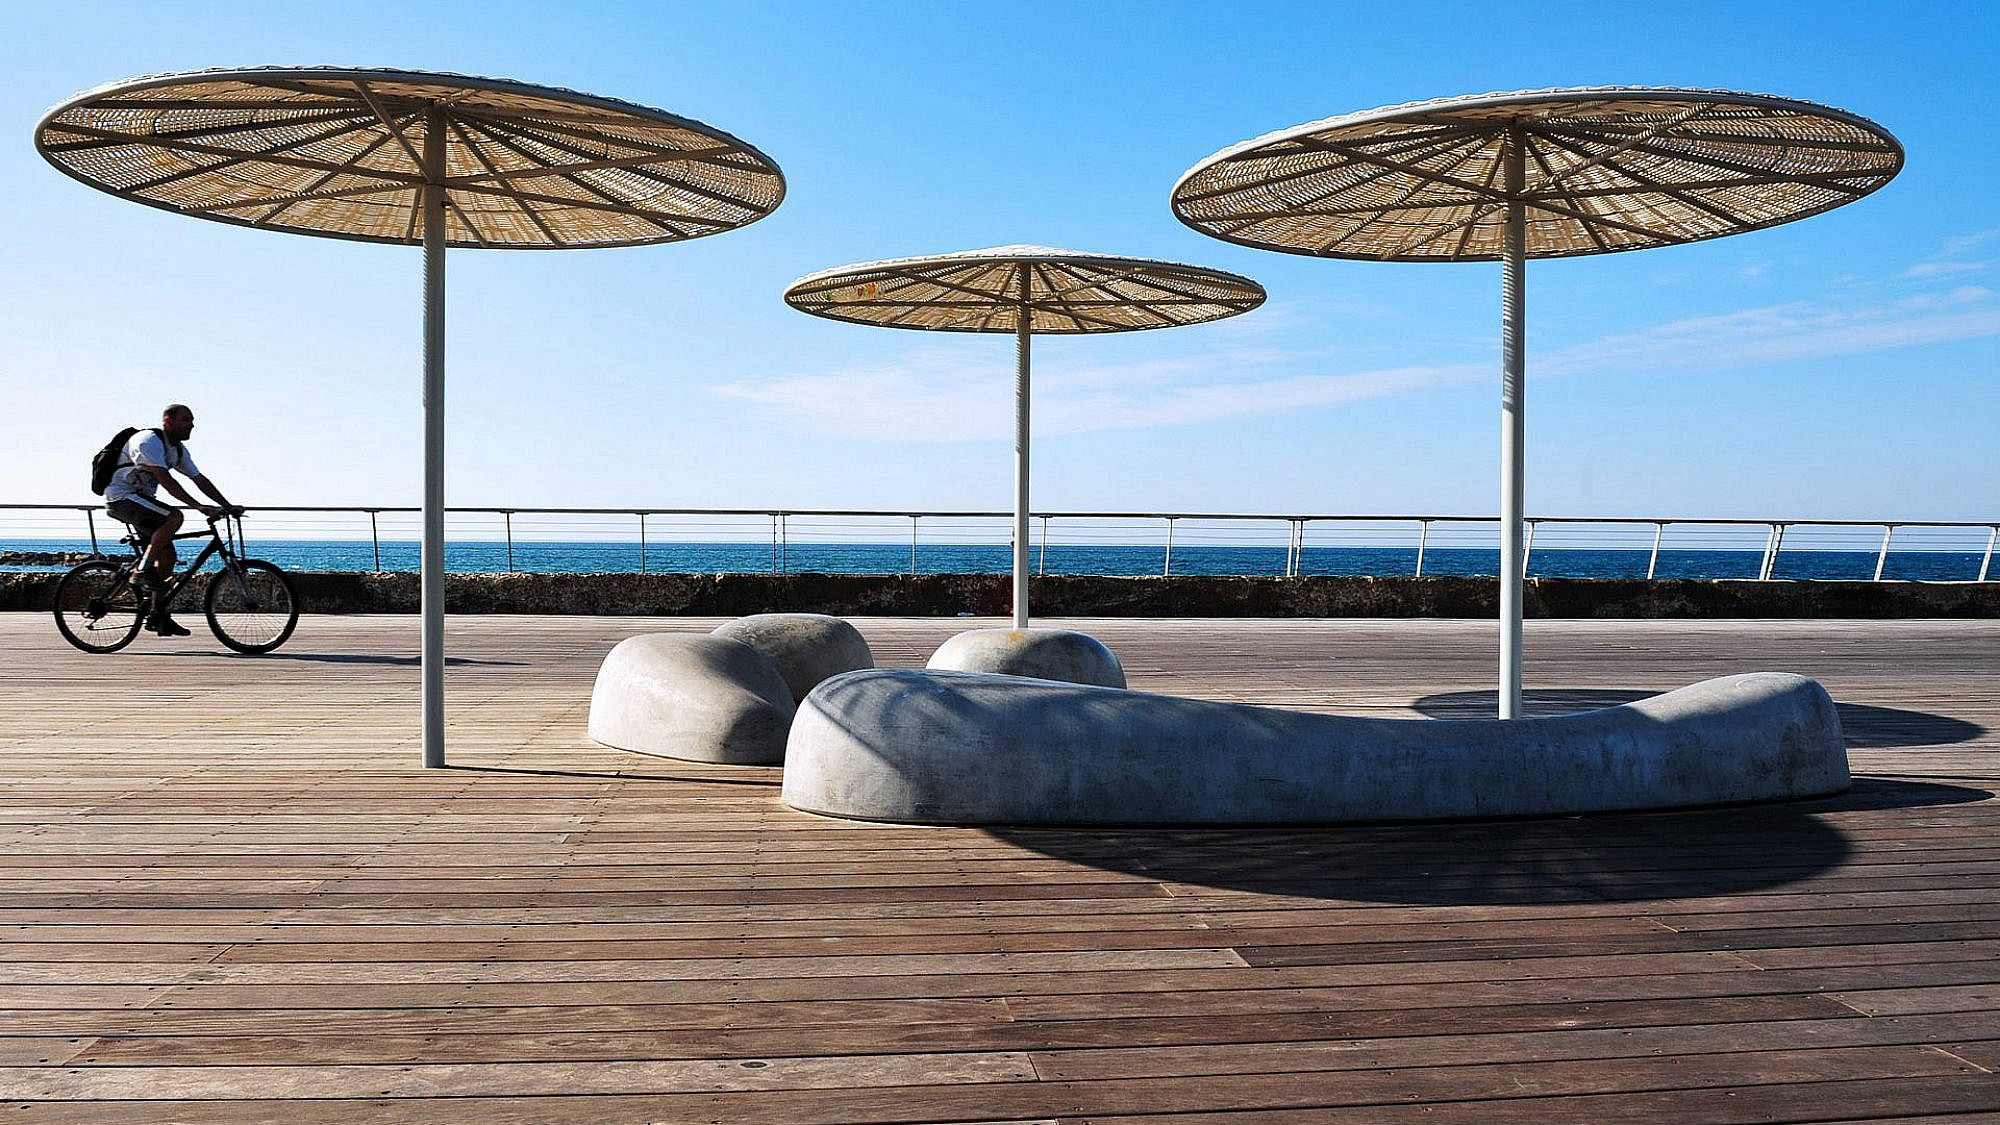 כמו כלבי ים משתזפים בשמש. מושבי הבטון בנמל תל אביב (צילום: Shutterstock)